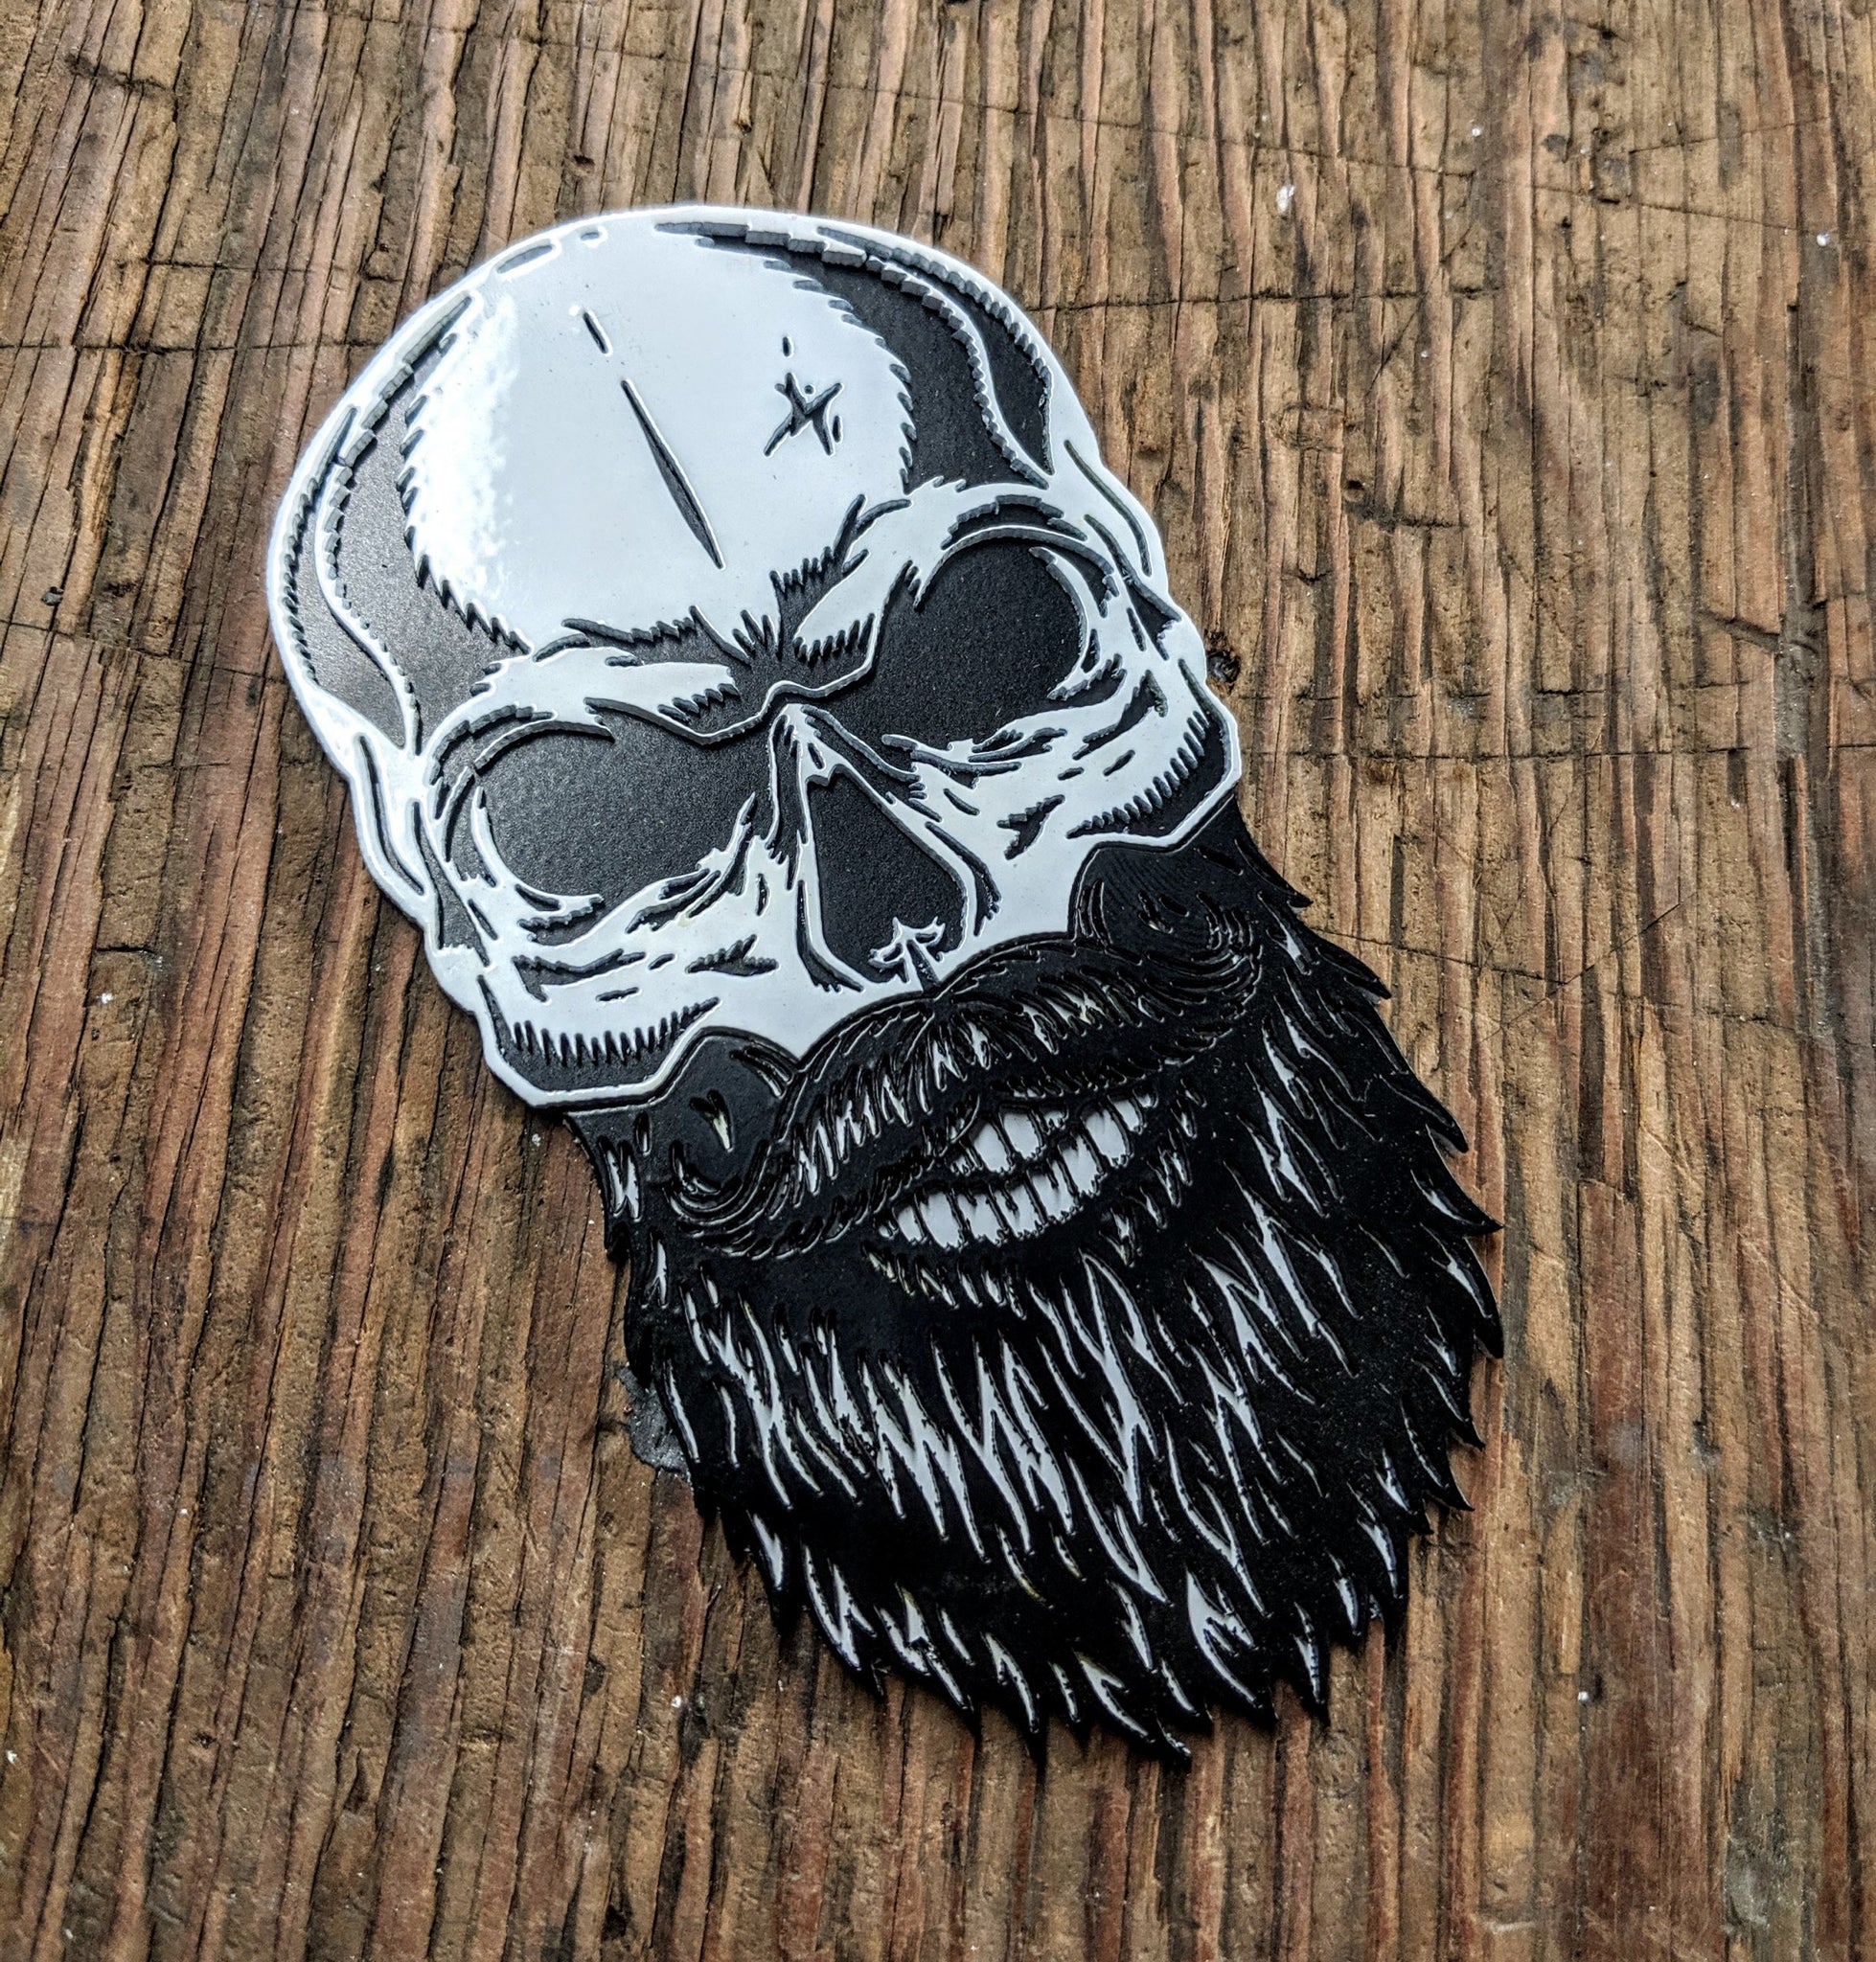 Bearded Skull Emblem - Stainless Steel